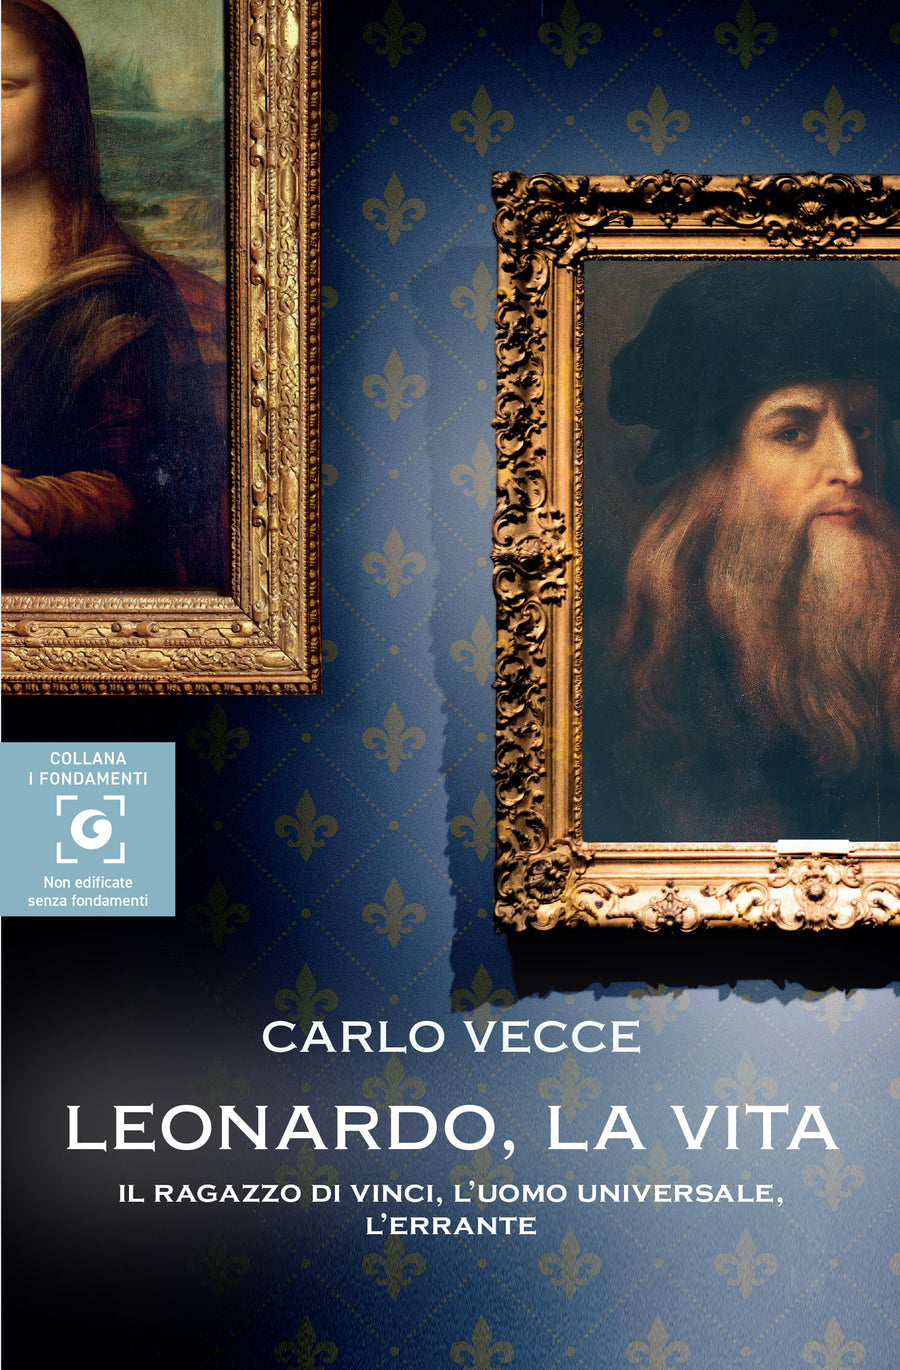 Carlo Vecce racconta per la prima volta "Leonardo. La vita"